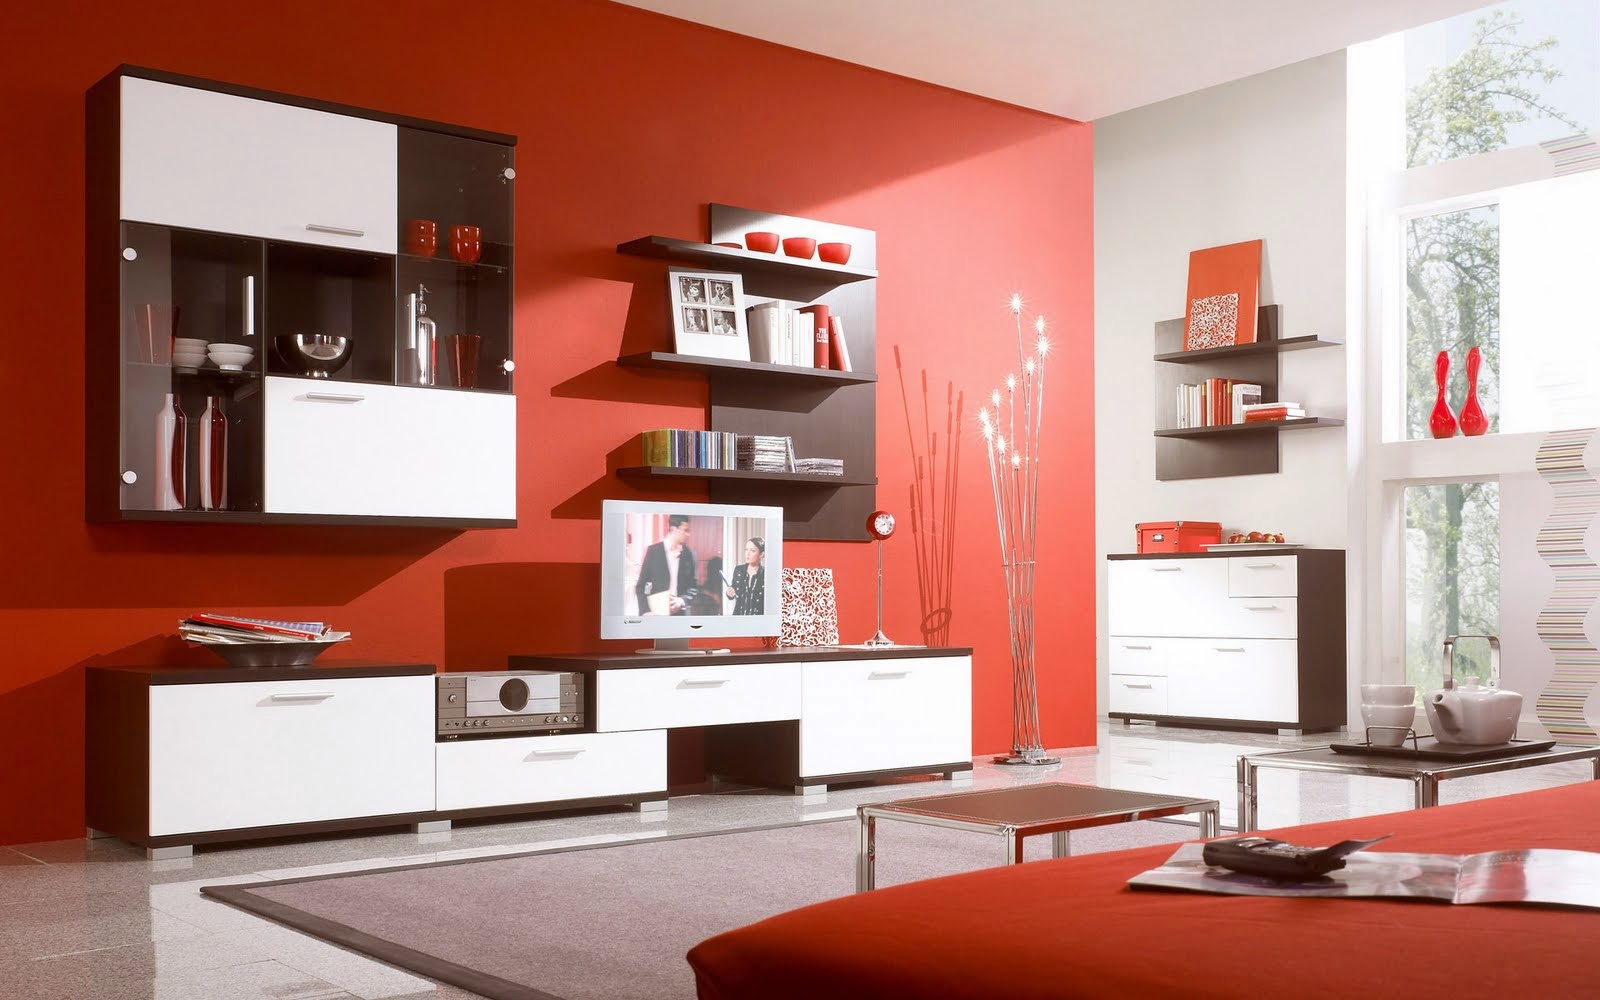 Ide Desain Ruang Tamu Minimalis Warna Merah Ide Desain Rumah Minimalis